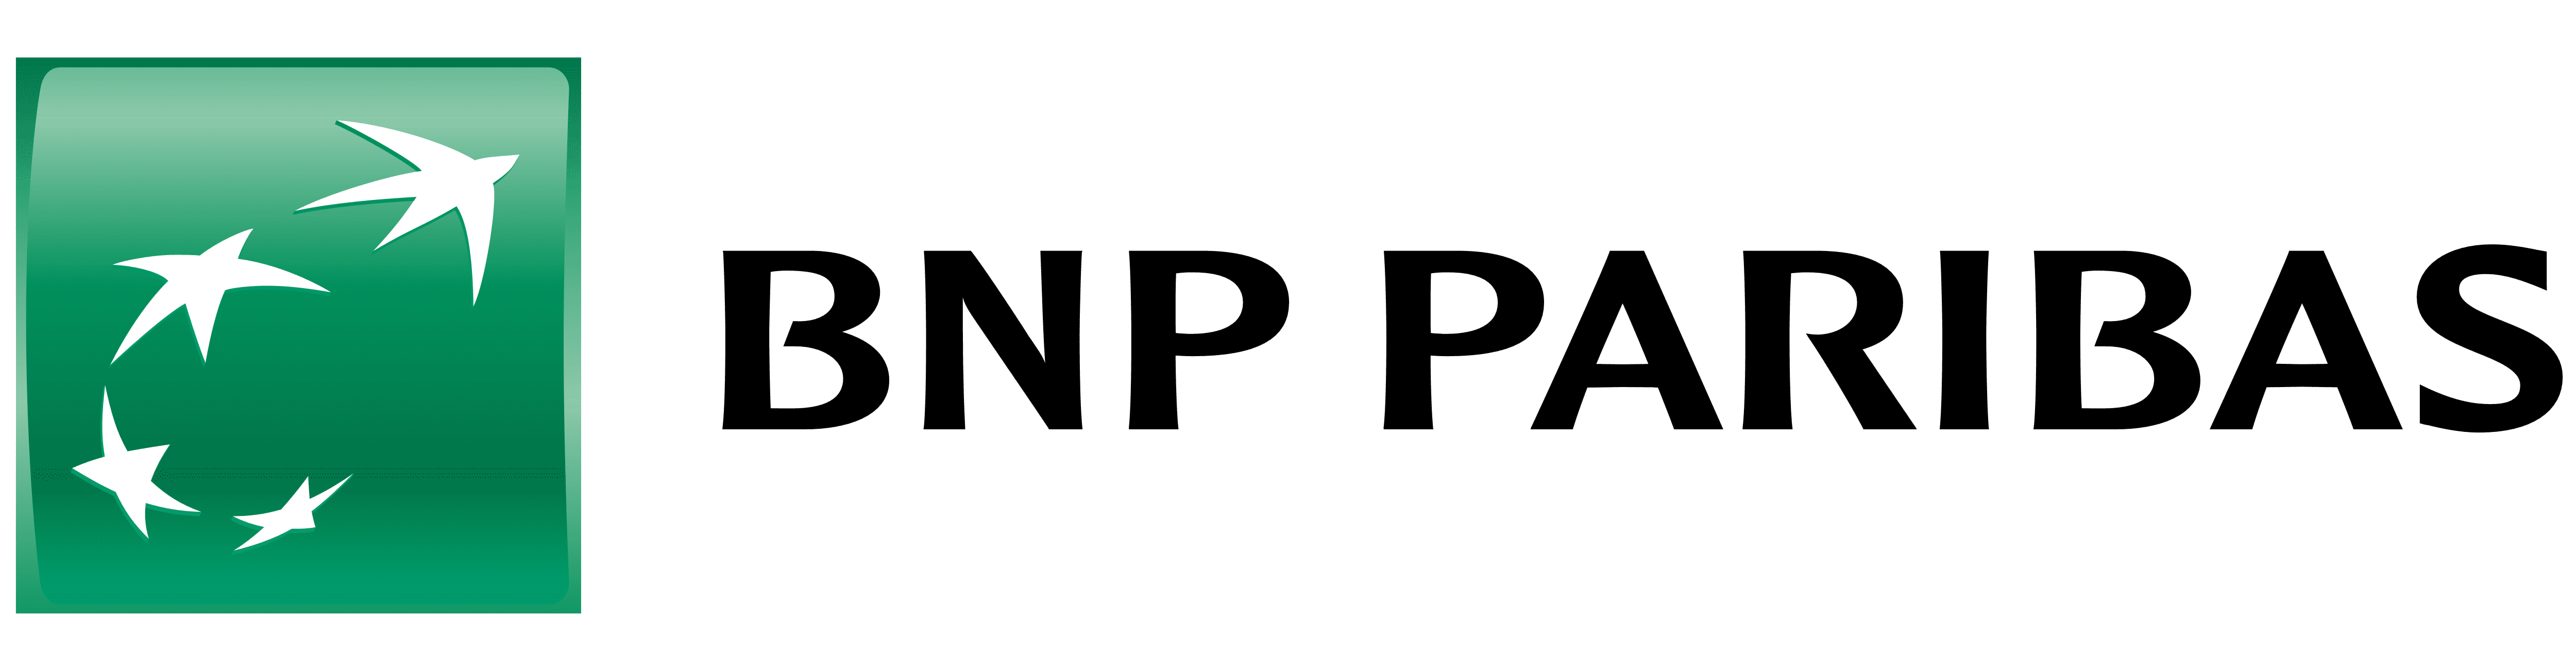 BNP Paribas Logo - Jellyfish